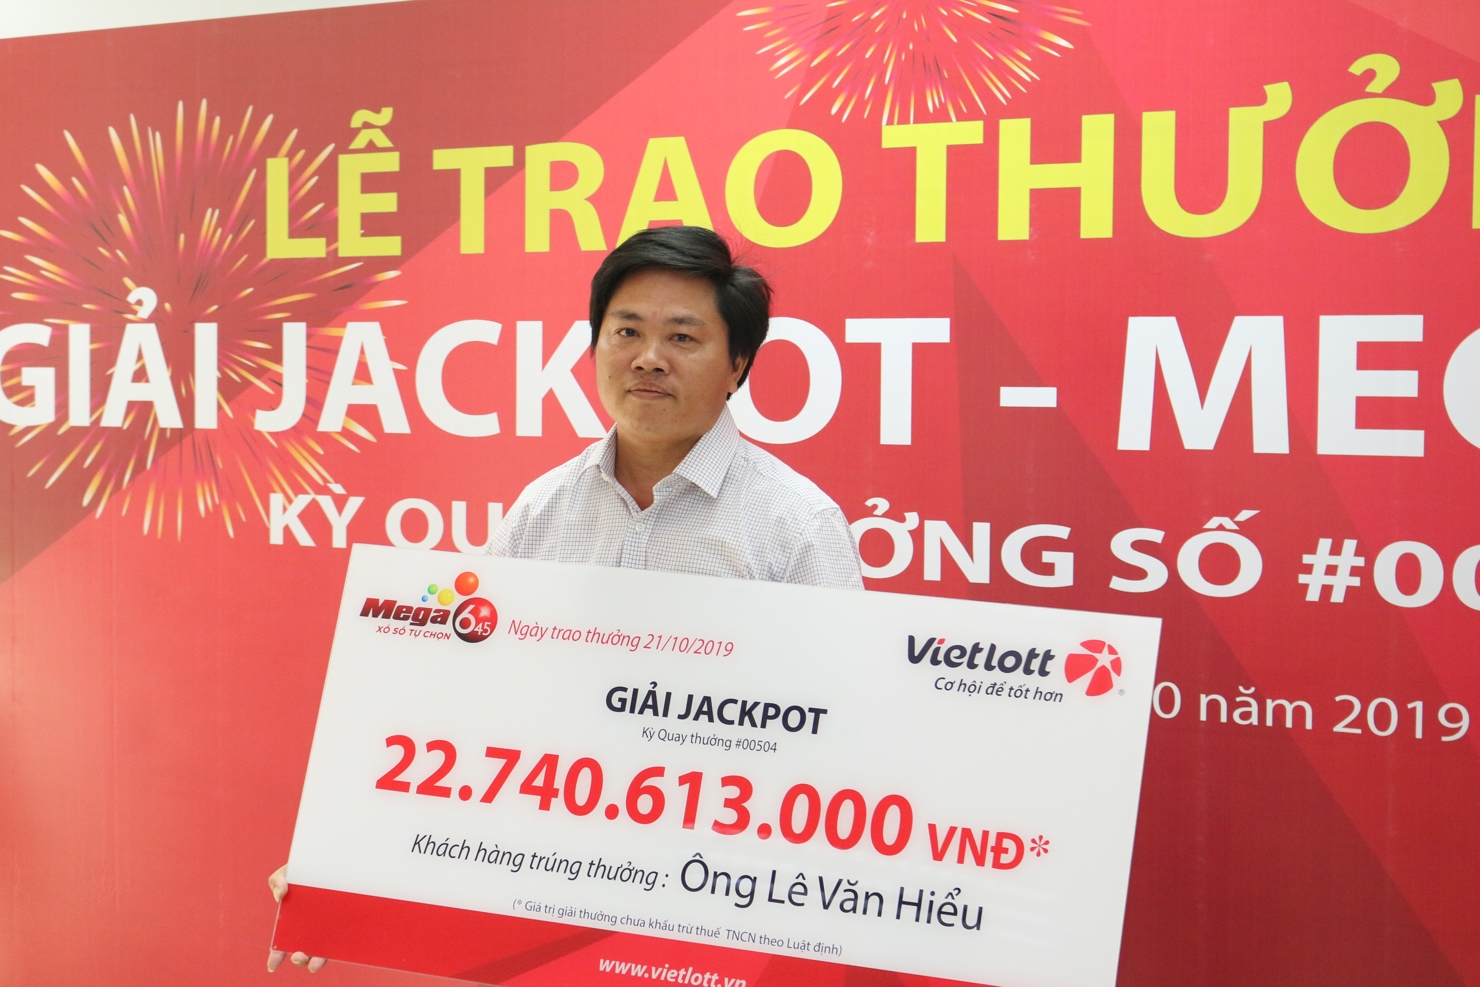 Anh Hiểu nhận giải Jackpot Mega 6/45 kỳ 504 trị giá gần 23 tỷ đồng.